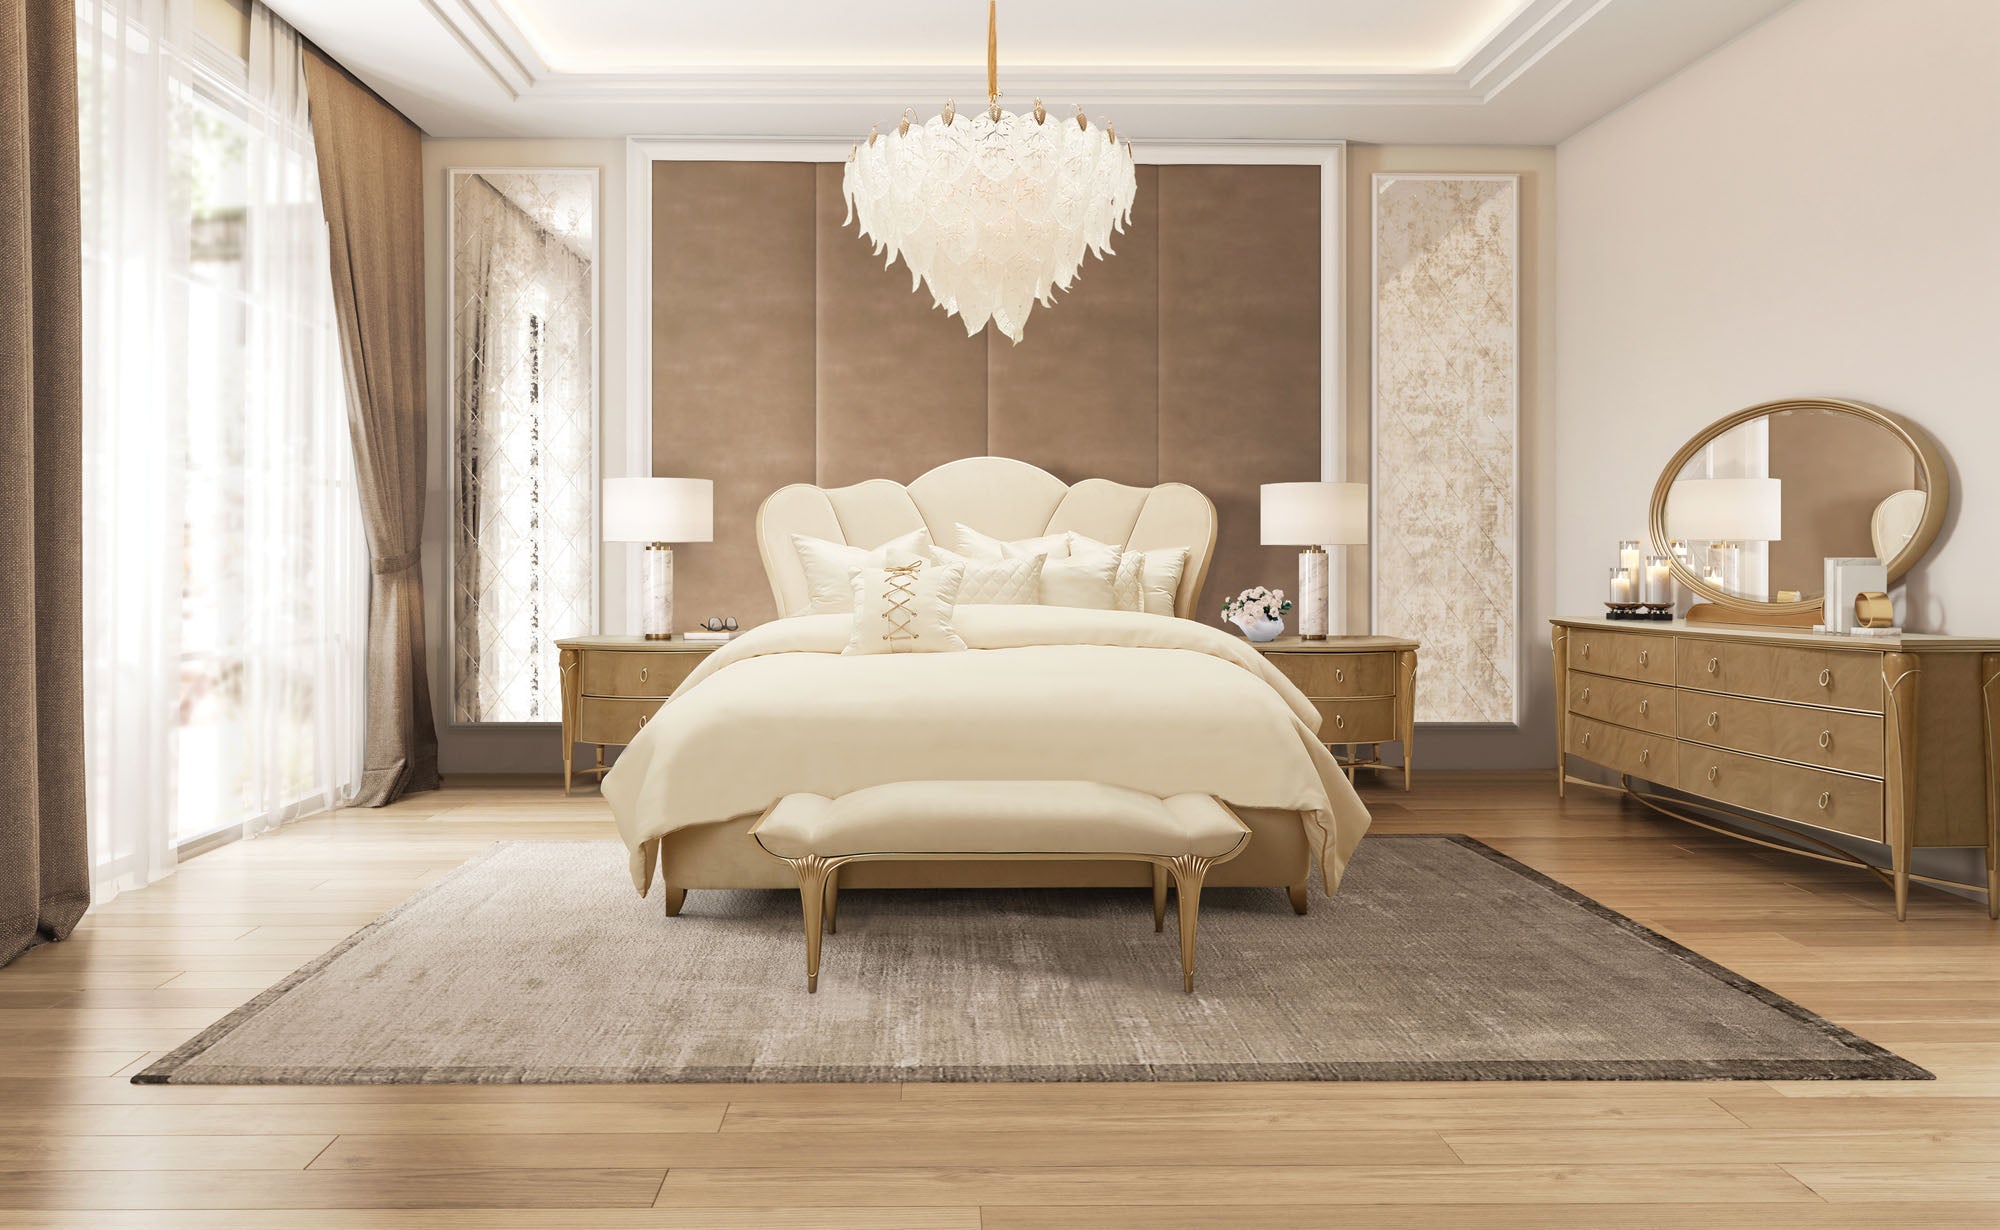 Villa Cherie Caramel Upholstered King Bed - MJM Furniture